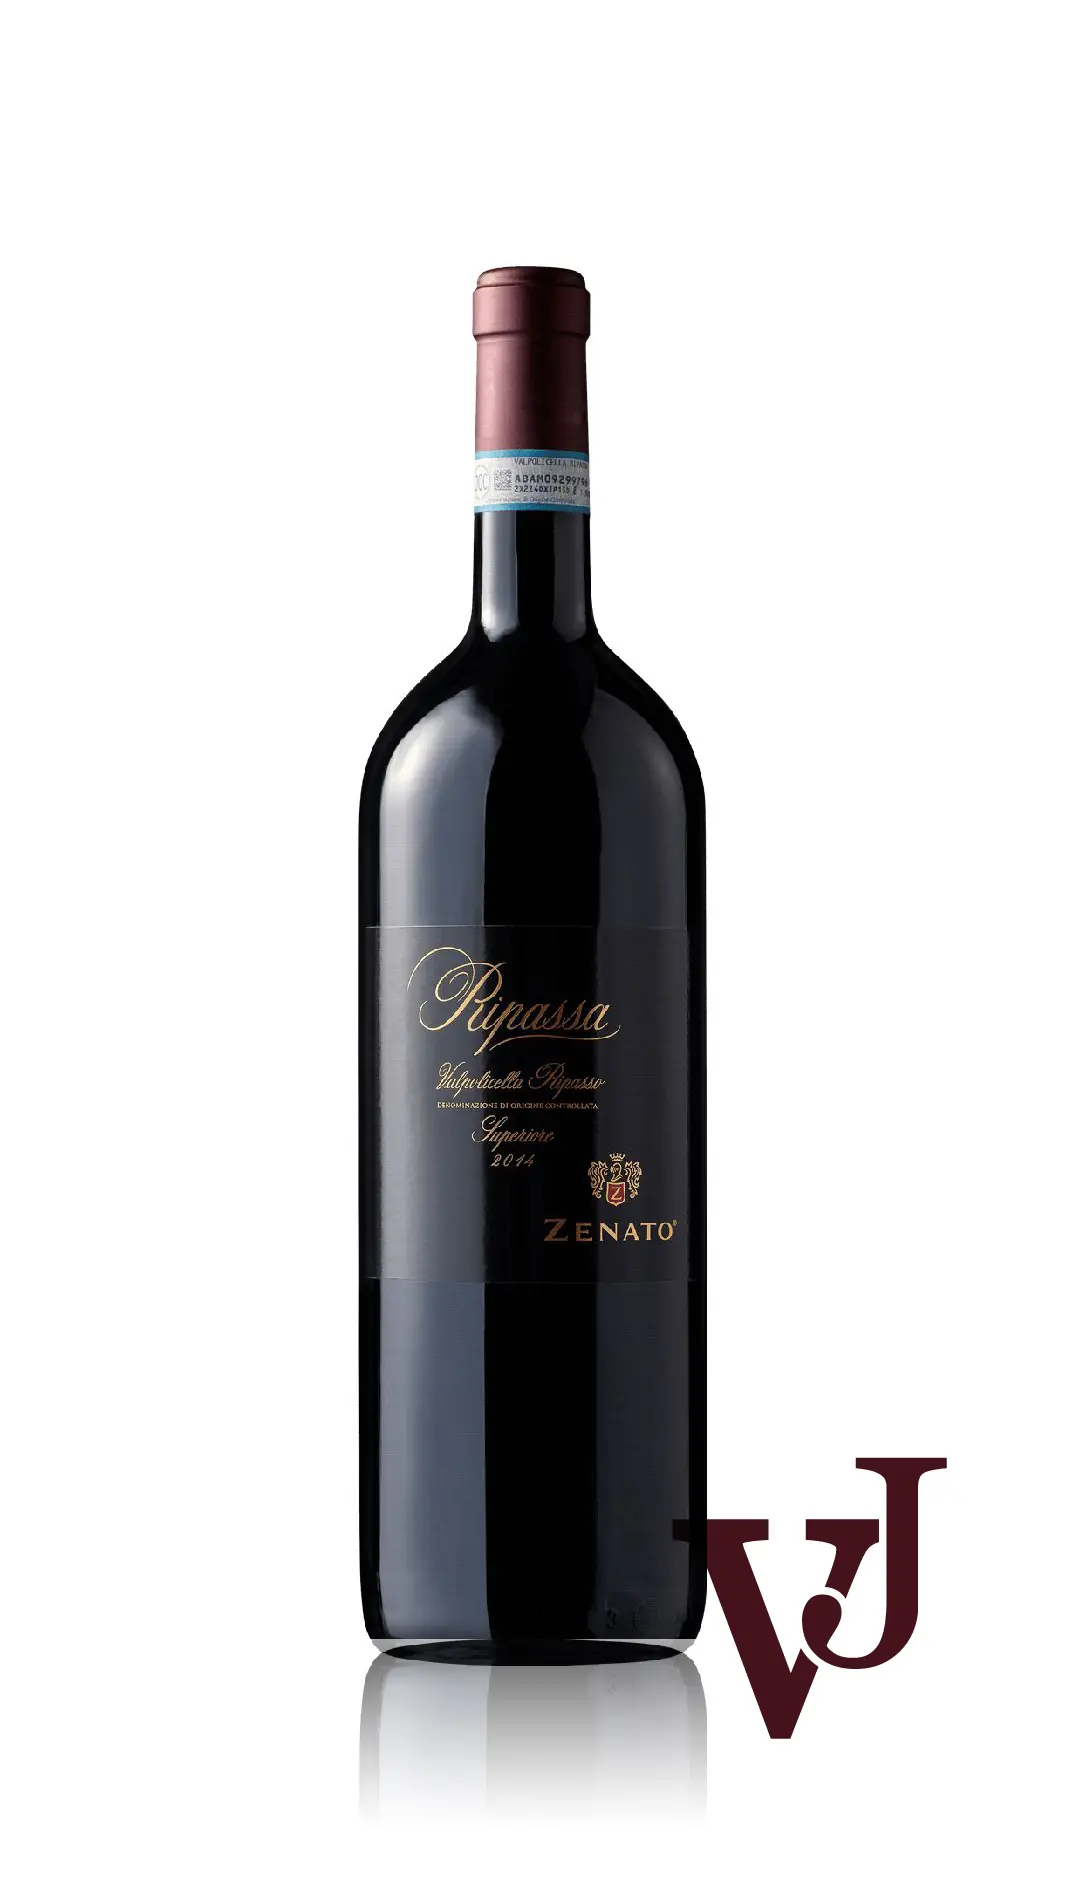 Rött Vin - Zenato Ripassa Superiore artikel nummer 5331506 från producenten Zenato från området Italien - Vinjournalen.se